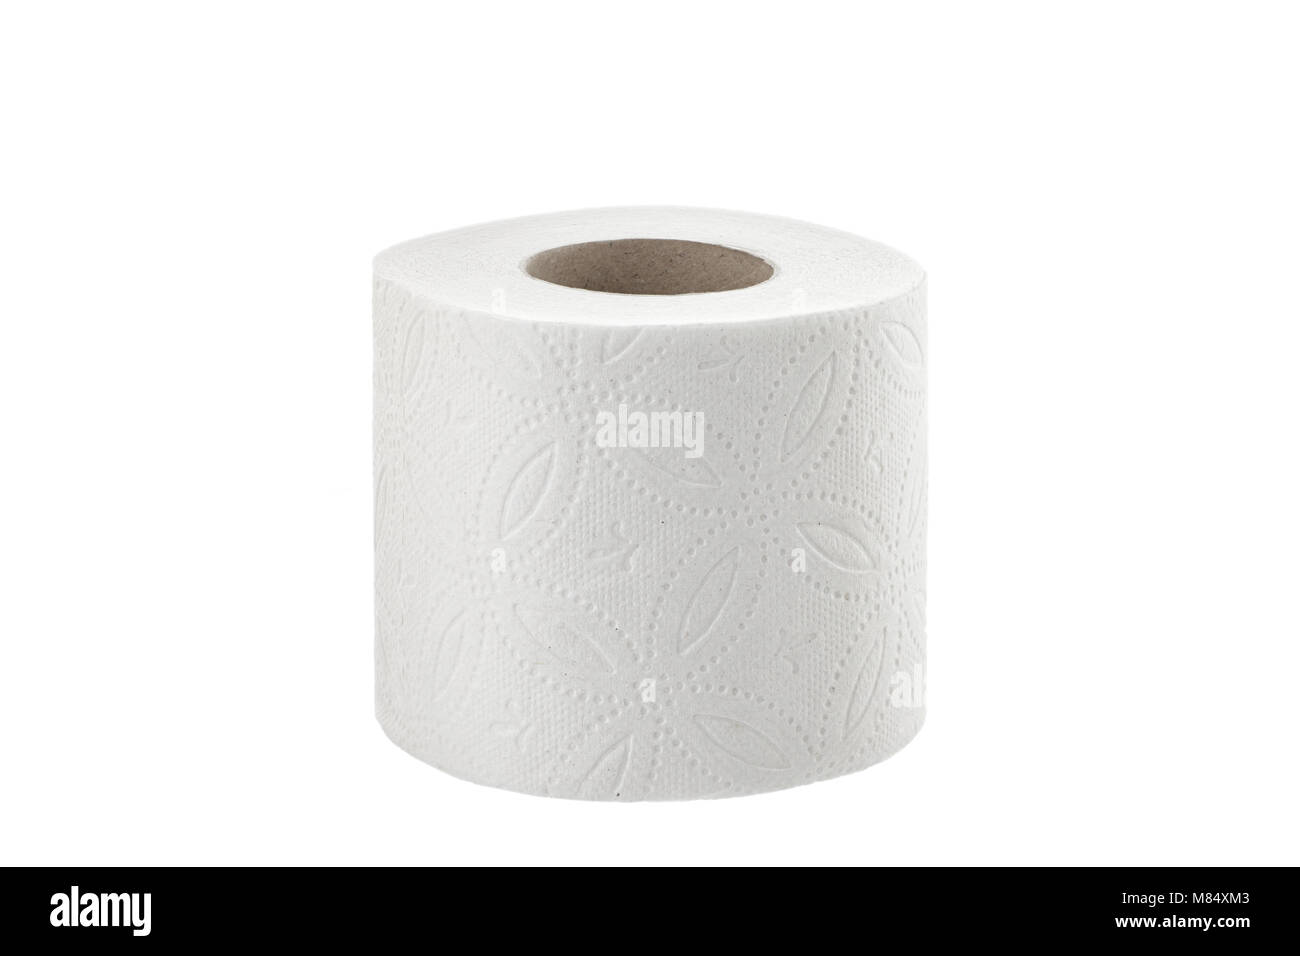 Papier toilette : 526 813 images, photos de stock, objets 3D et